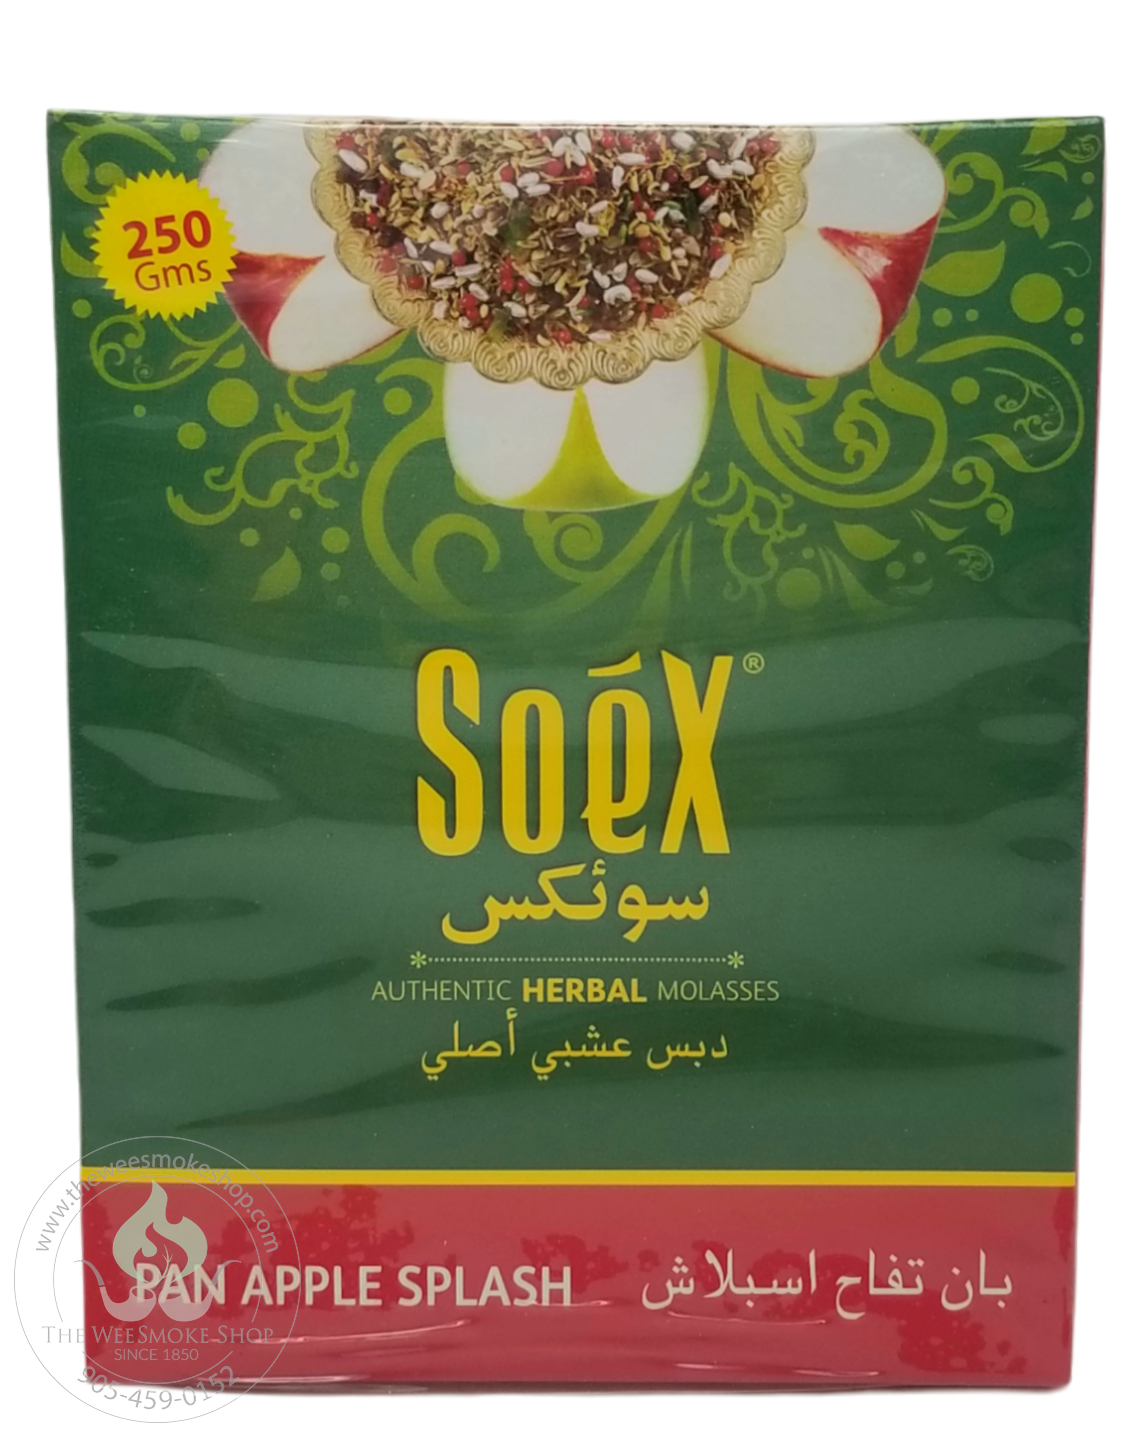 Pan Apple Splash Soex Herbal Molasses (250g)-Hookah accessories-The Wee Smoke Shop